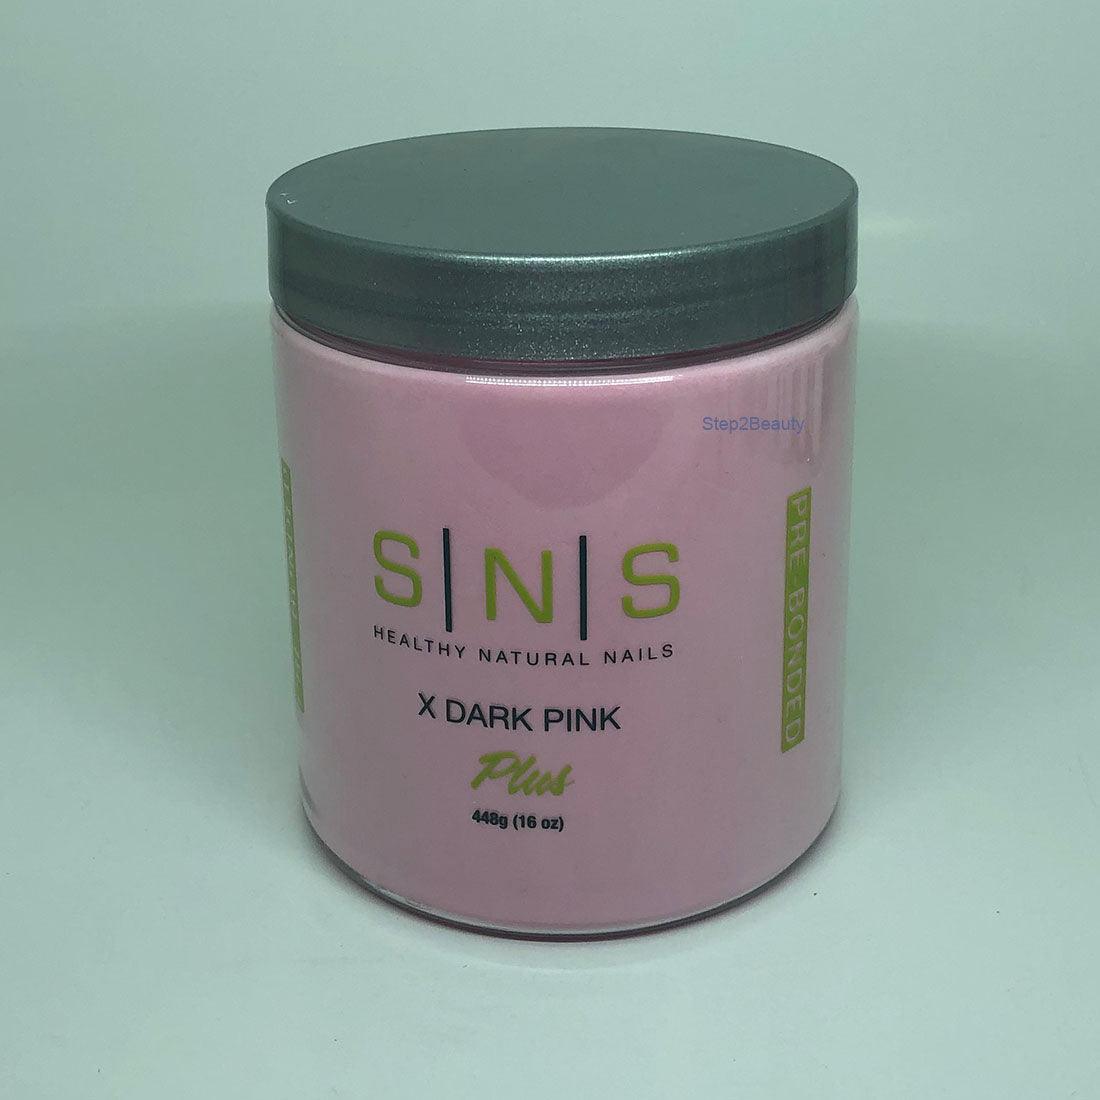 SNS Healthy Natural Nails Dipping Powder - X DARK PINK 16 oz